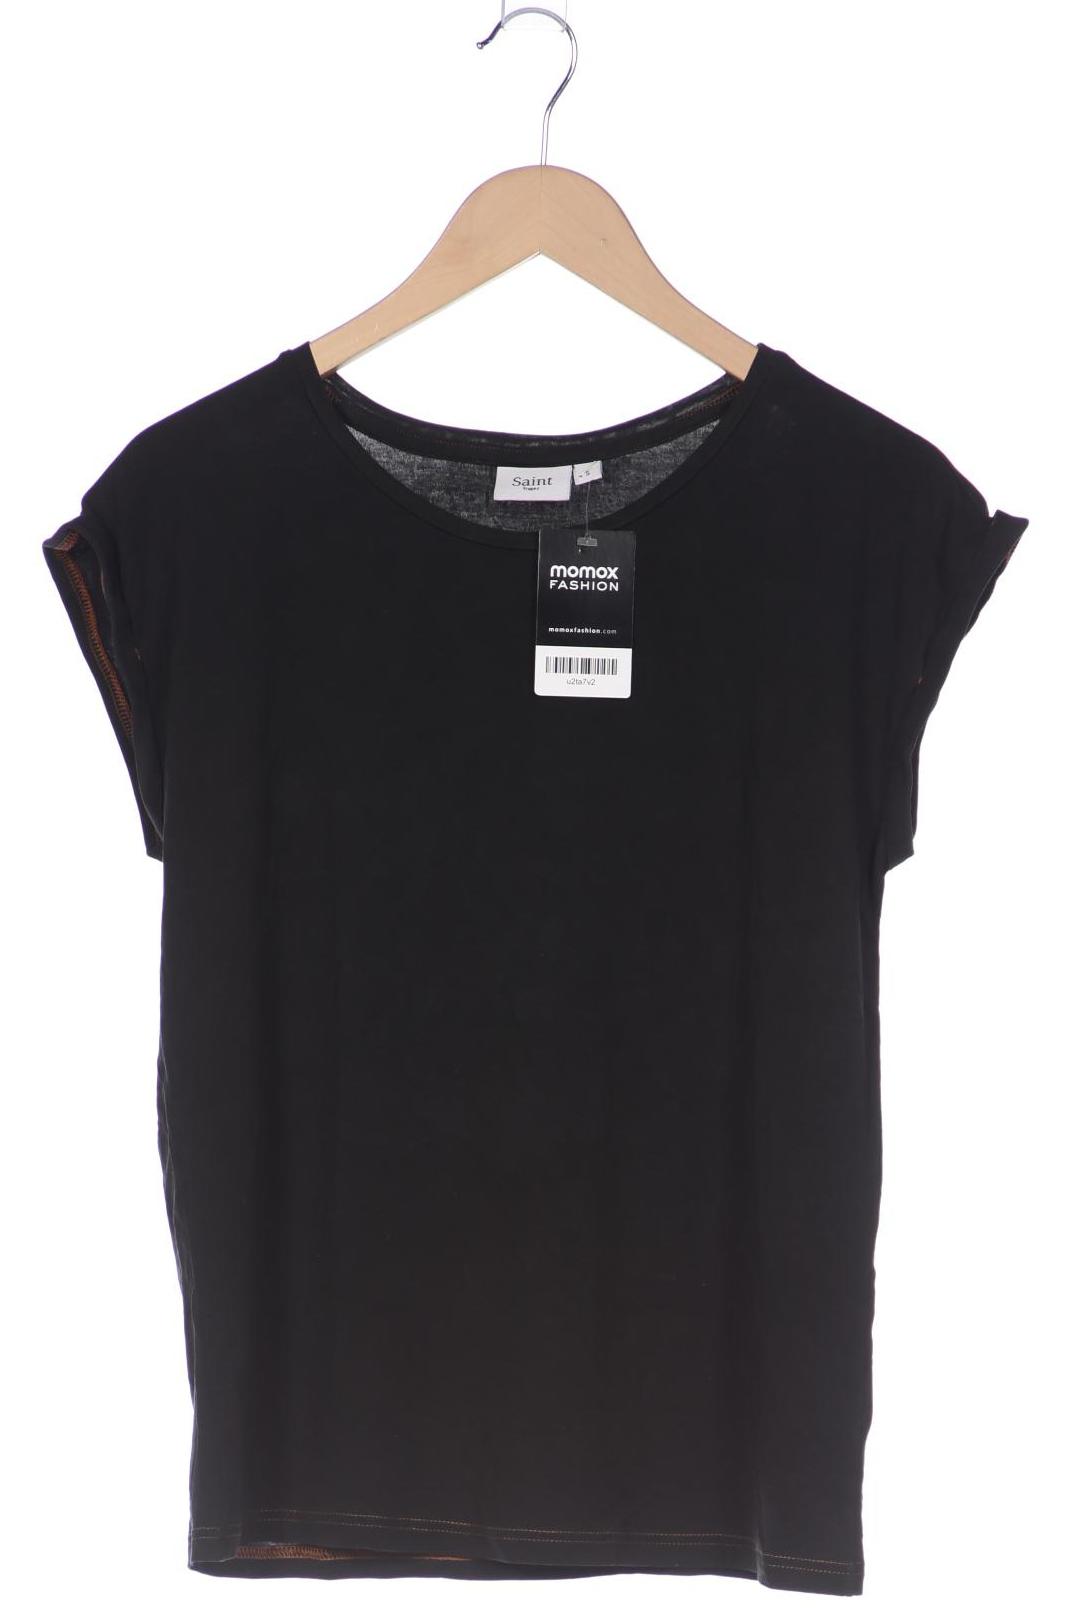 Saint Tropez Damen T-Shirt, schwarz, Gr. 36 von SAINT TROPEZ